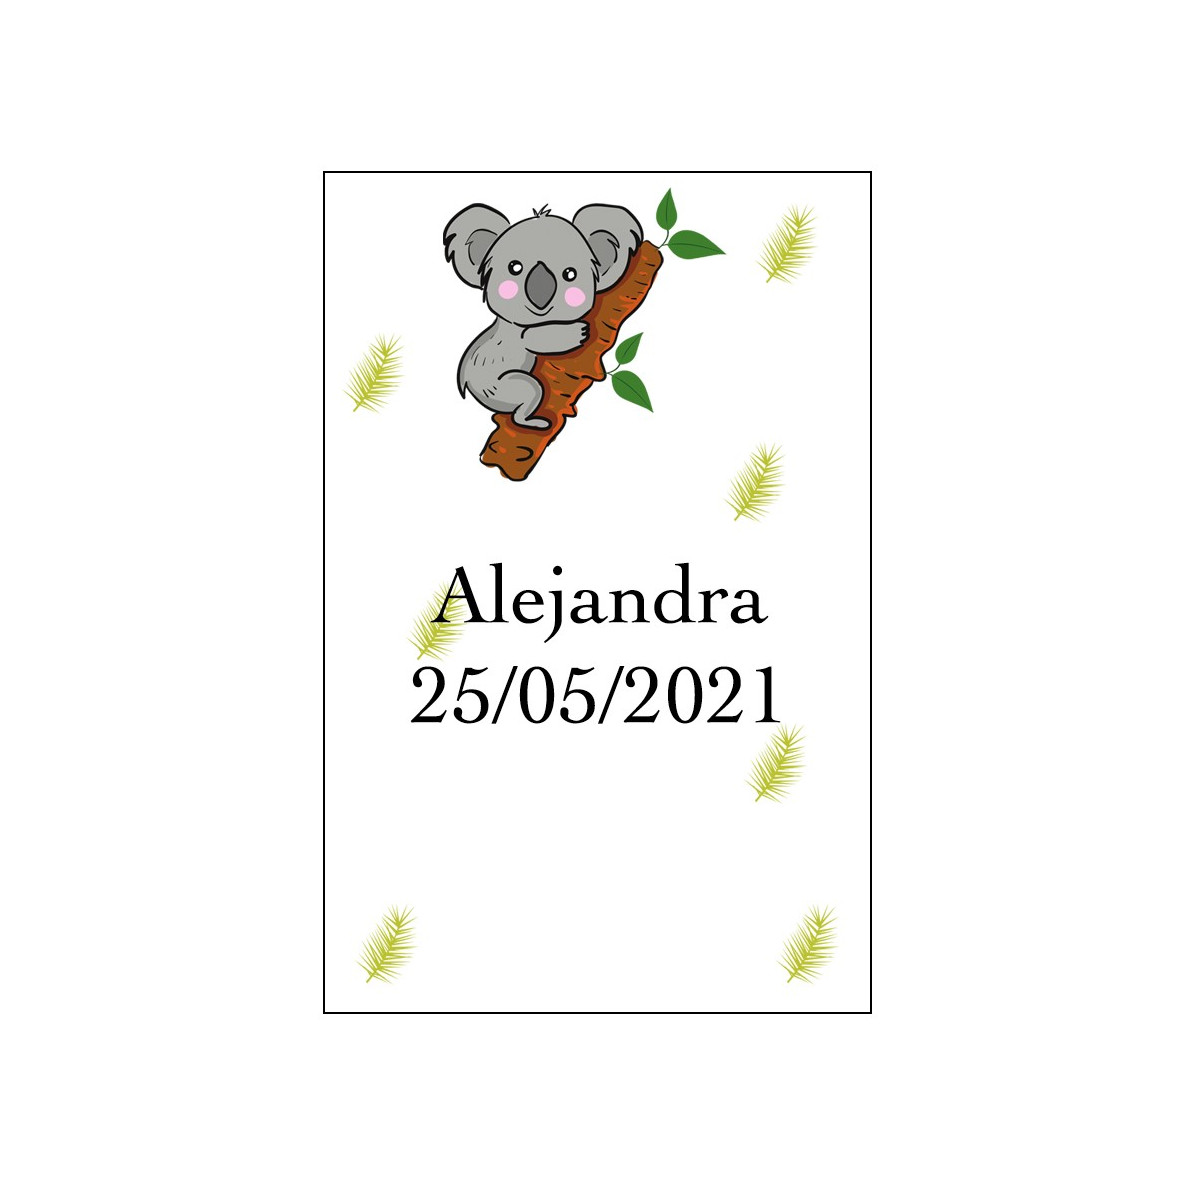 Autocollant koala personnalisé avec nom et date